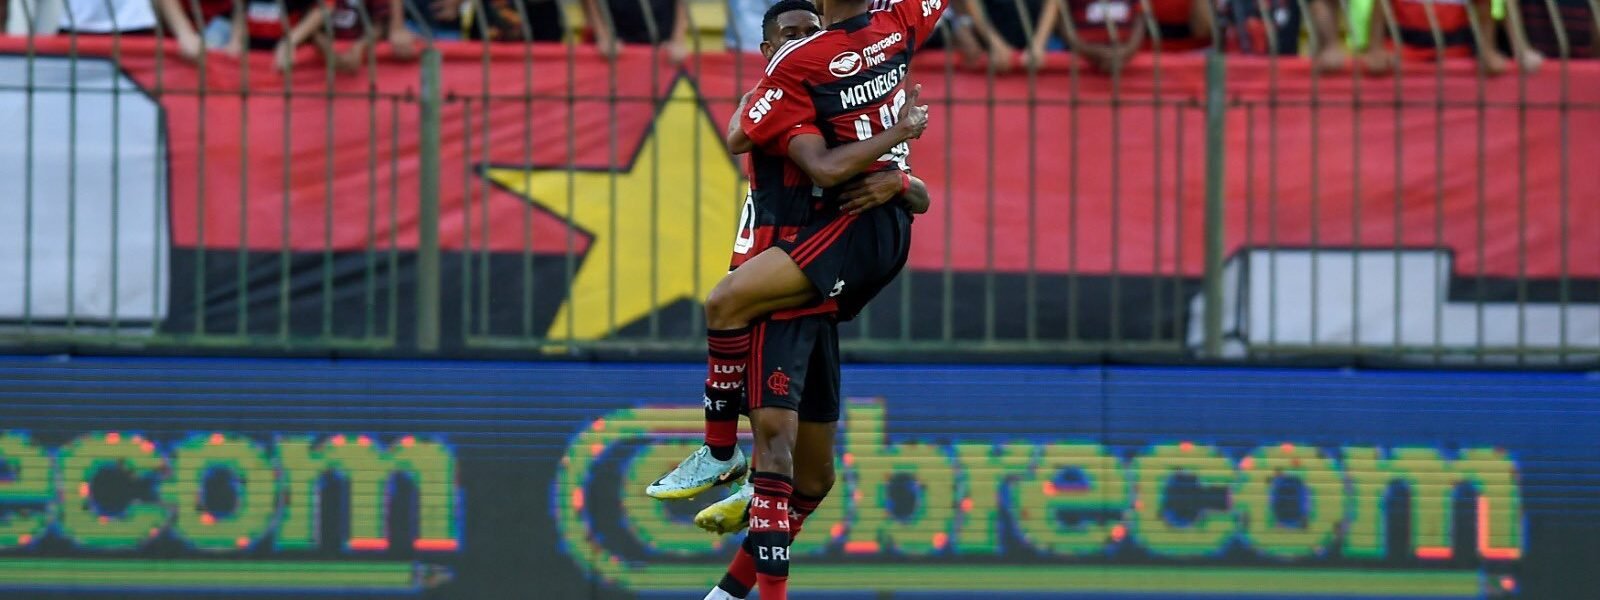 Jovens da base decidem e Flamengo dispara na liderança do Carioca